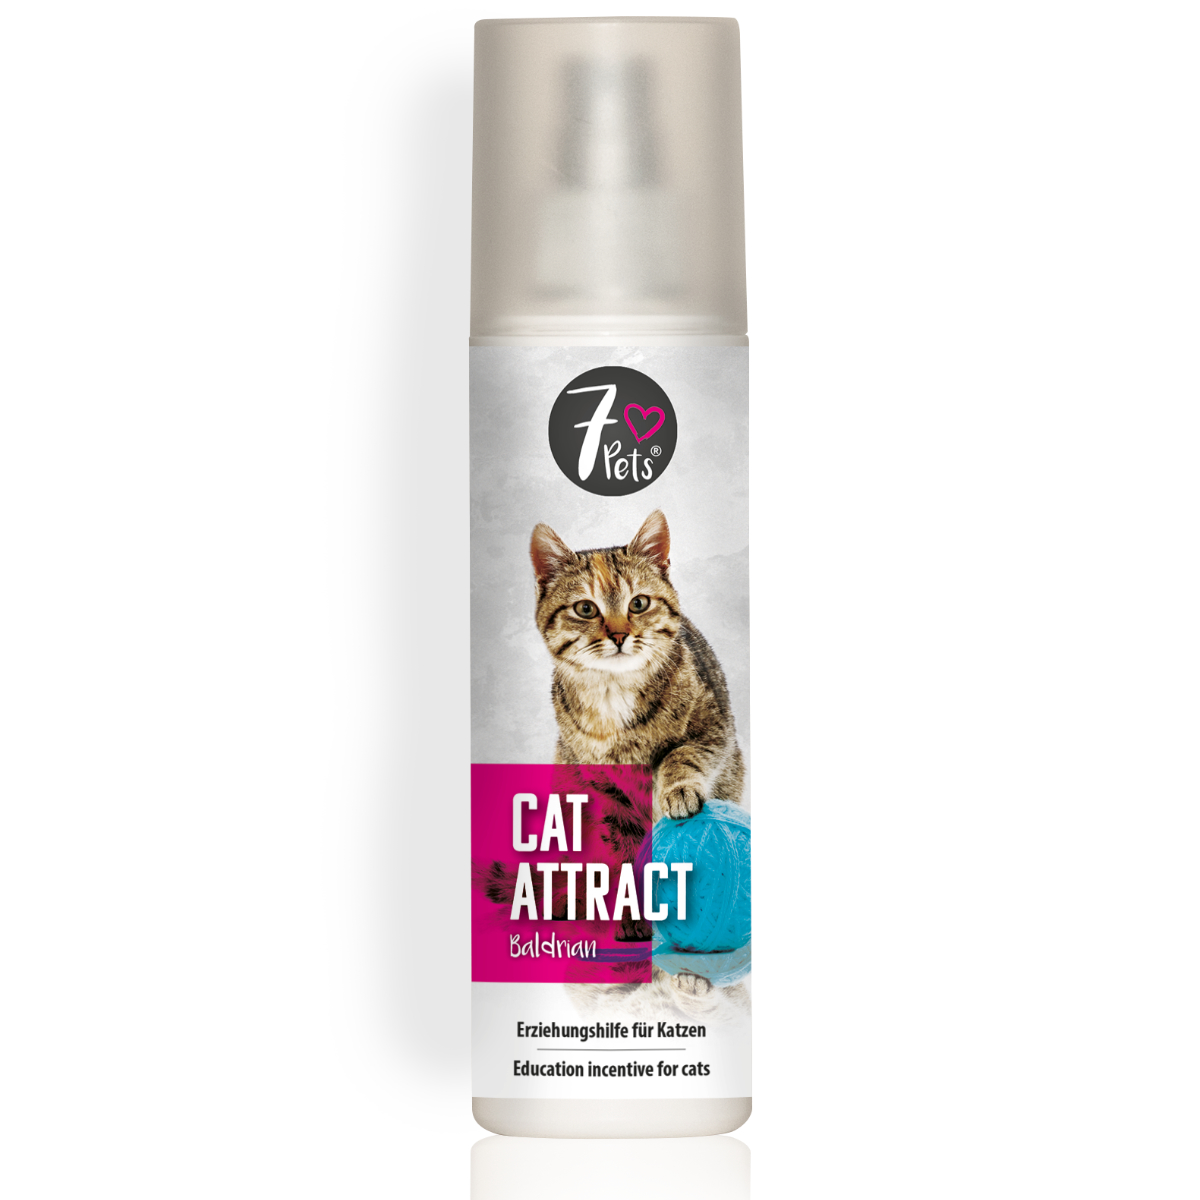 Cat Attract Baldrian Erziehungshilfe für Katzen 200 ml